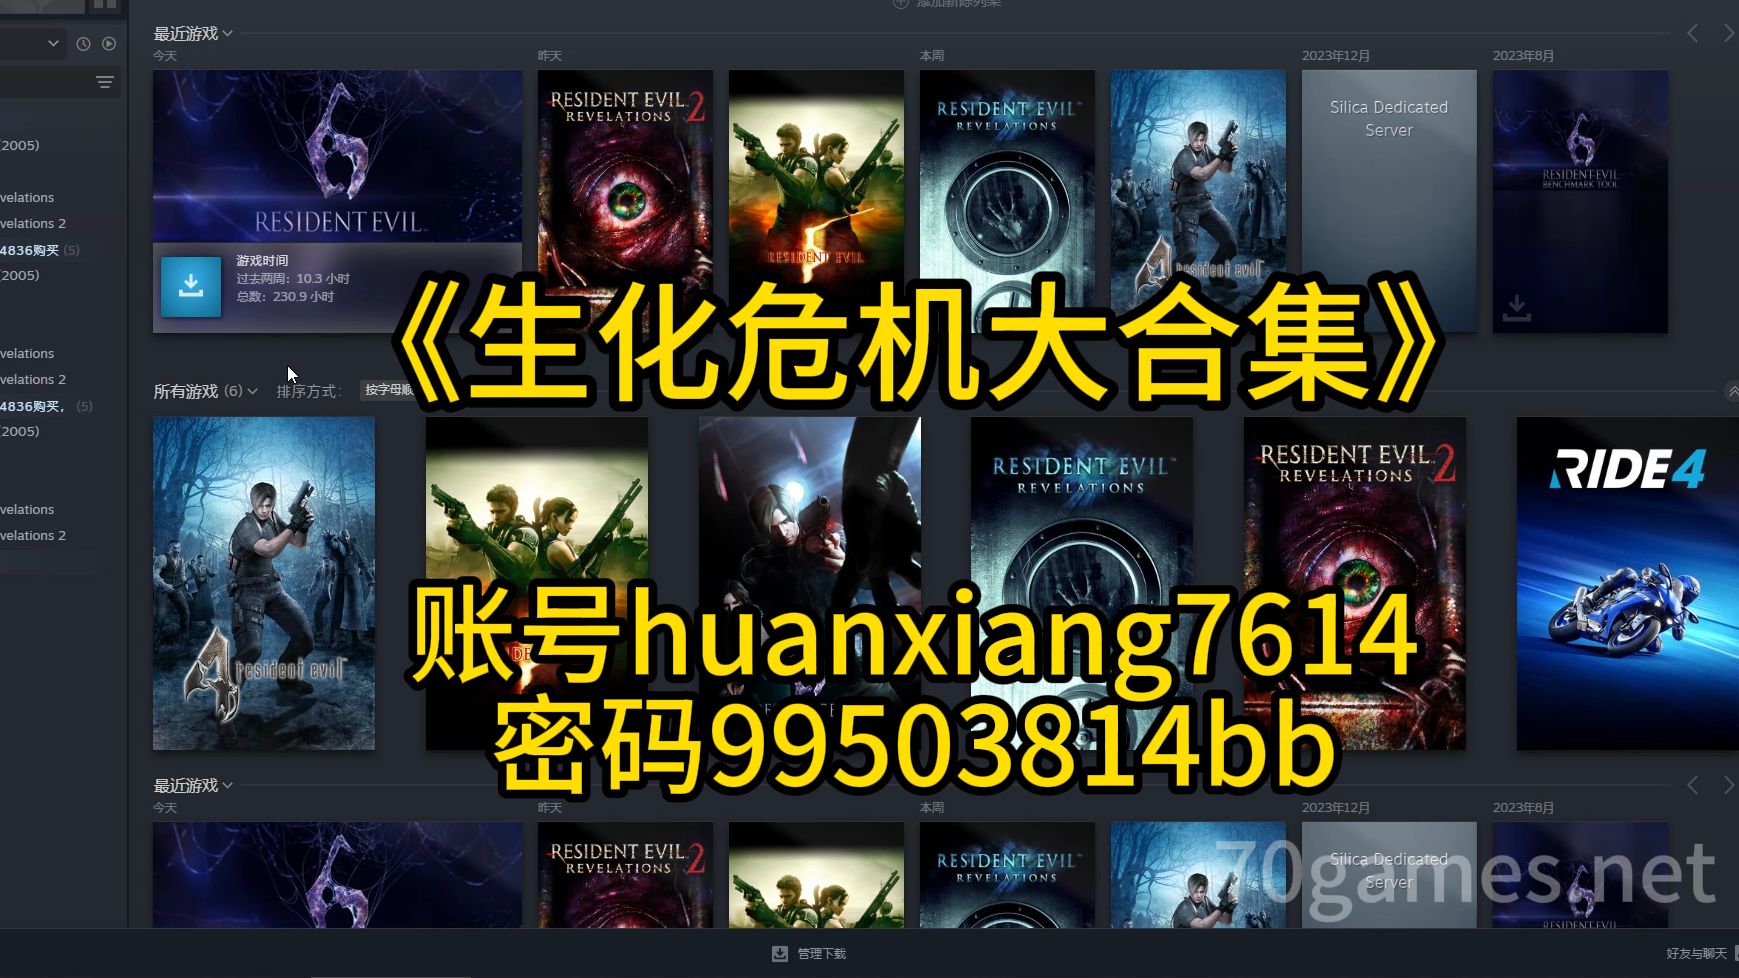 免费送《生化危机456+启示录1.2》steam账号huanxiang7614 密码99503814bb